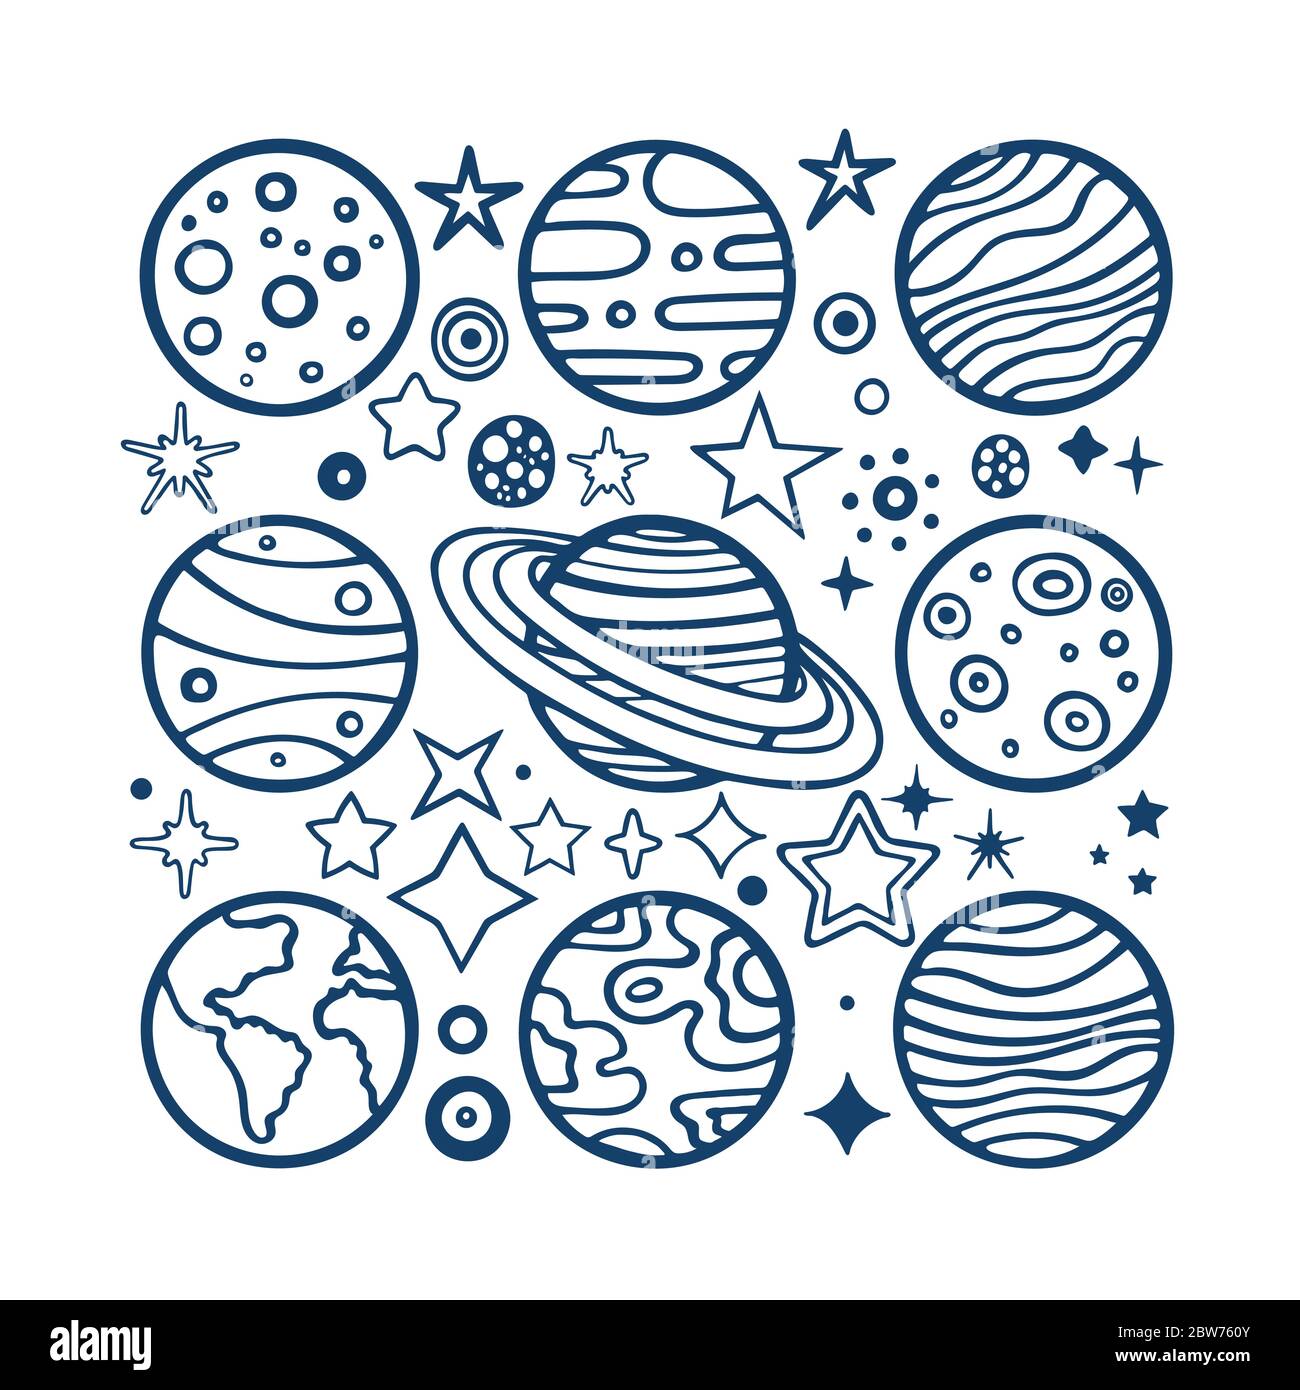 Planeten und Sterne. Hand gezeichnete Planeten und verschiedene Form Sterne Vektor-Illustration gesetzt. Planets Skizze Zeichnung. Planeten und Sterne kritzeln. Teil des Sets Stock Vektor